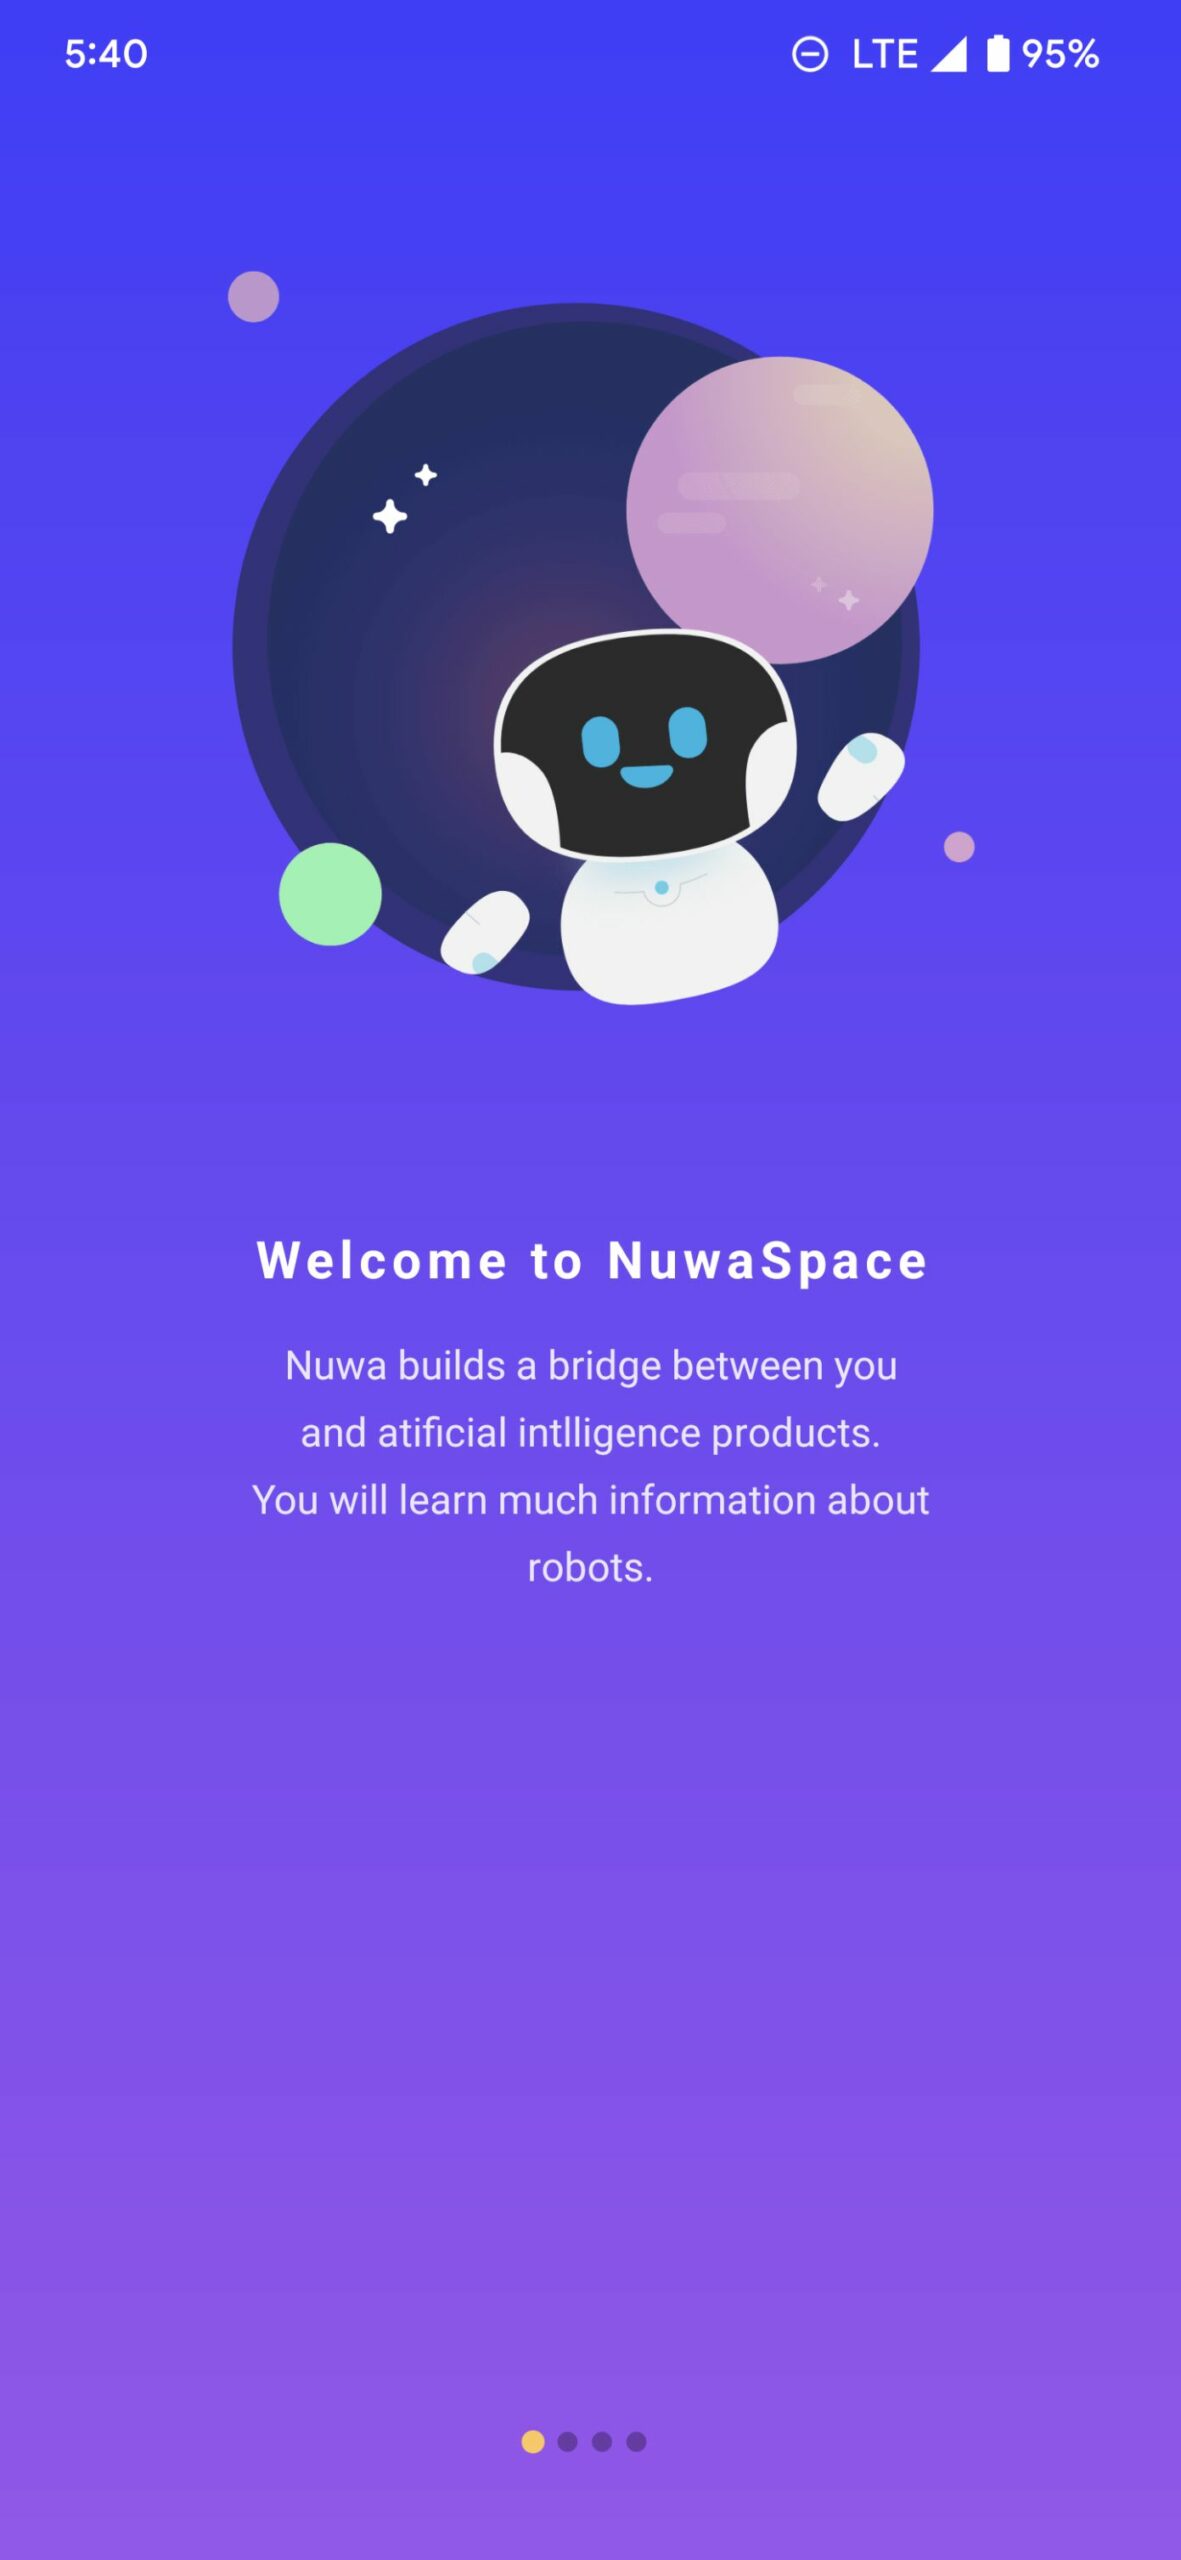 NuwaSpace_LandingPage_1